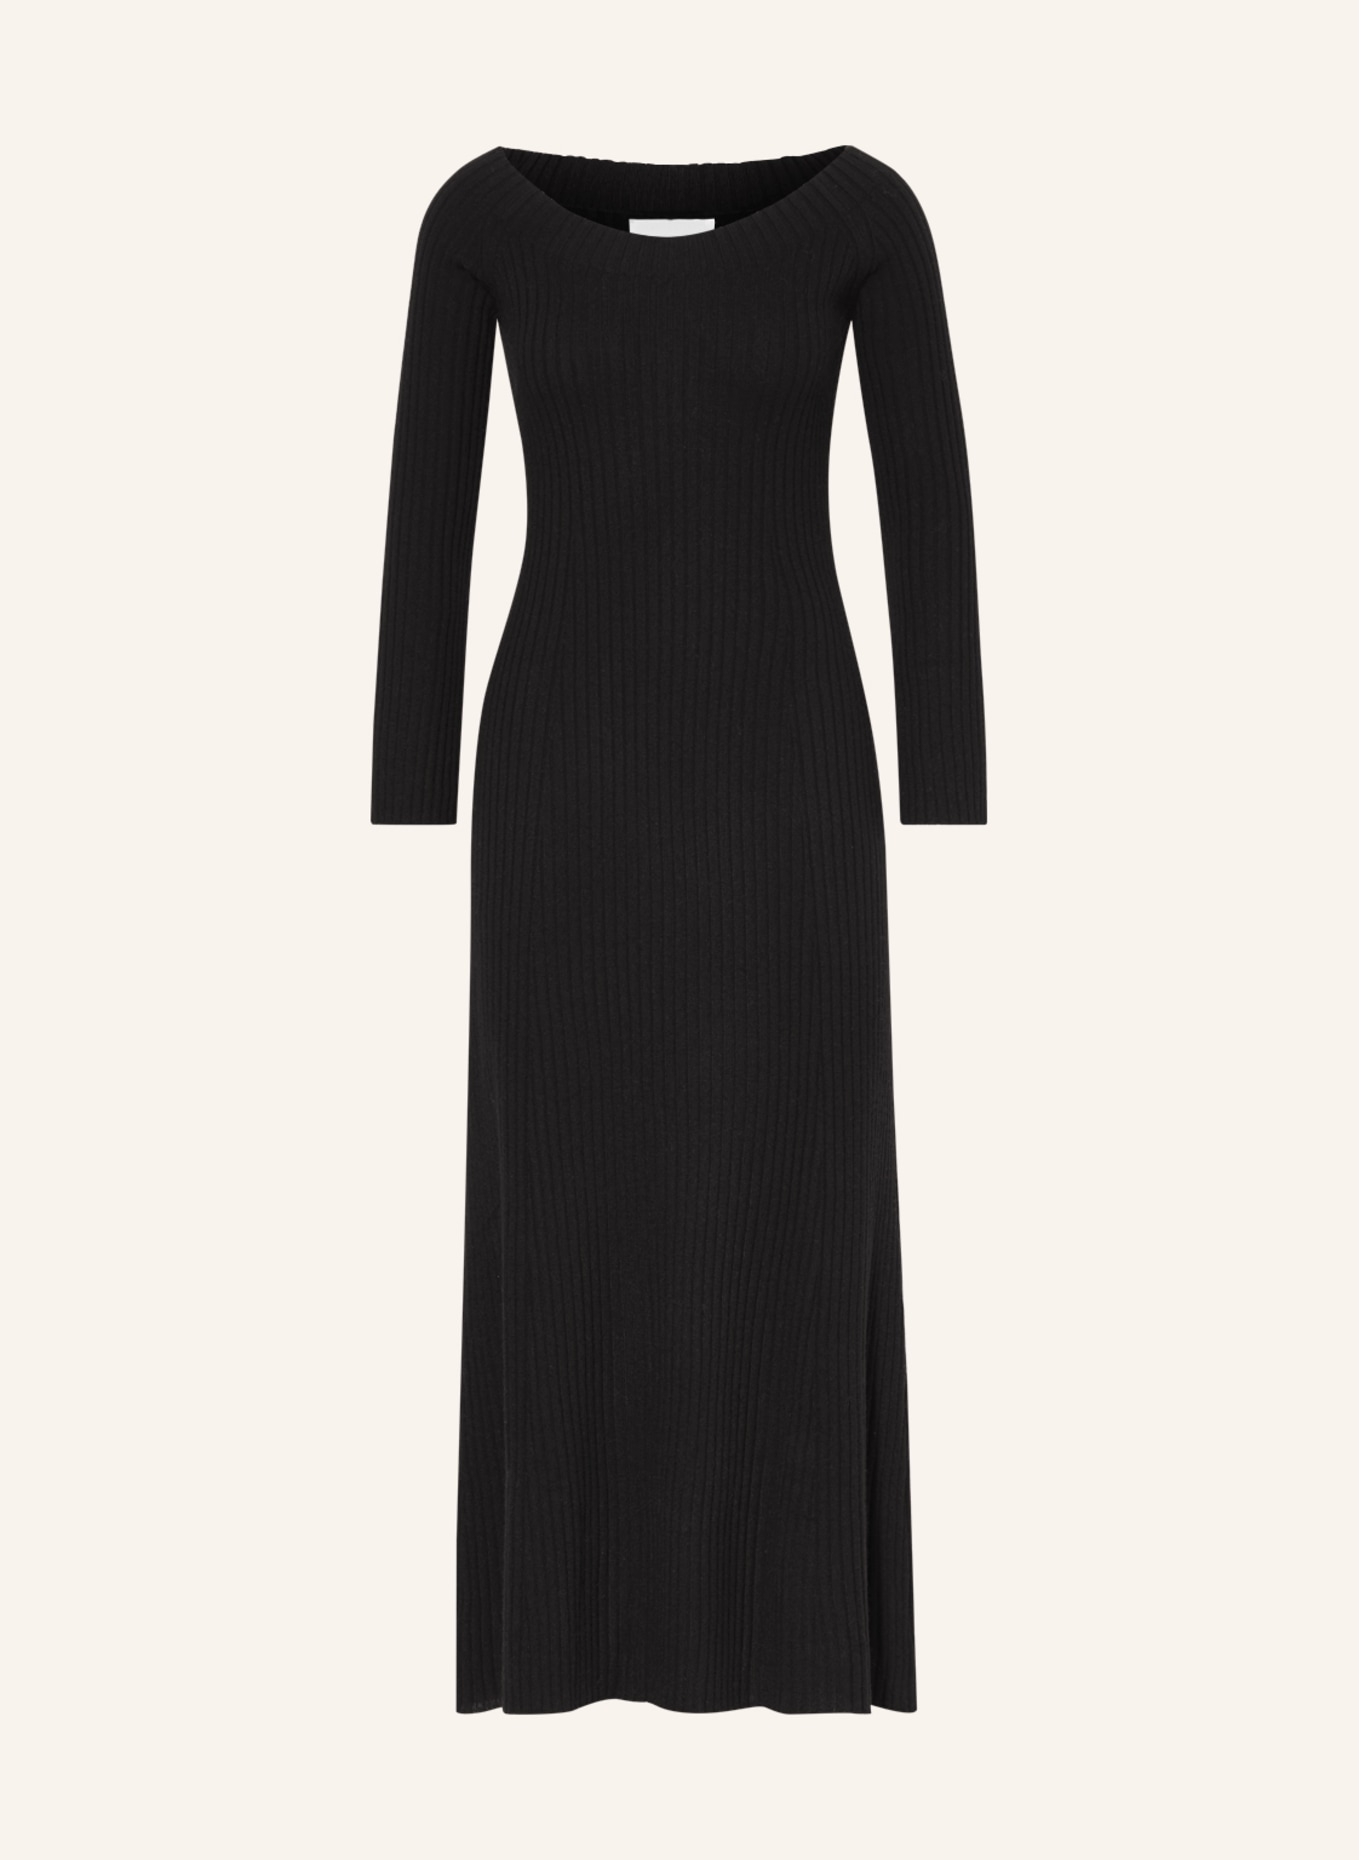 LISA YANG Knit dress MARVIN in cashmere, Color: BLACK (Image 1)